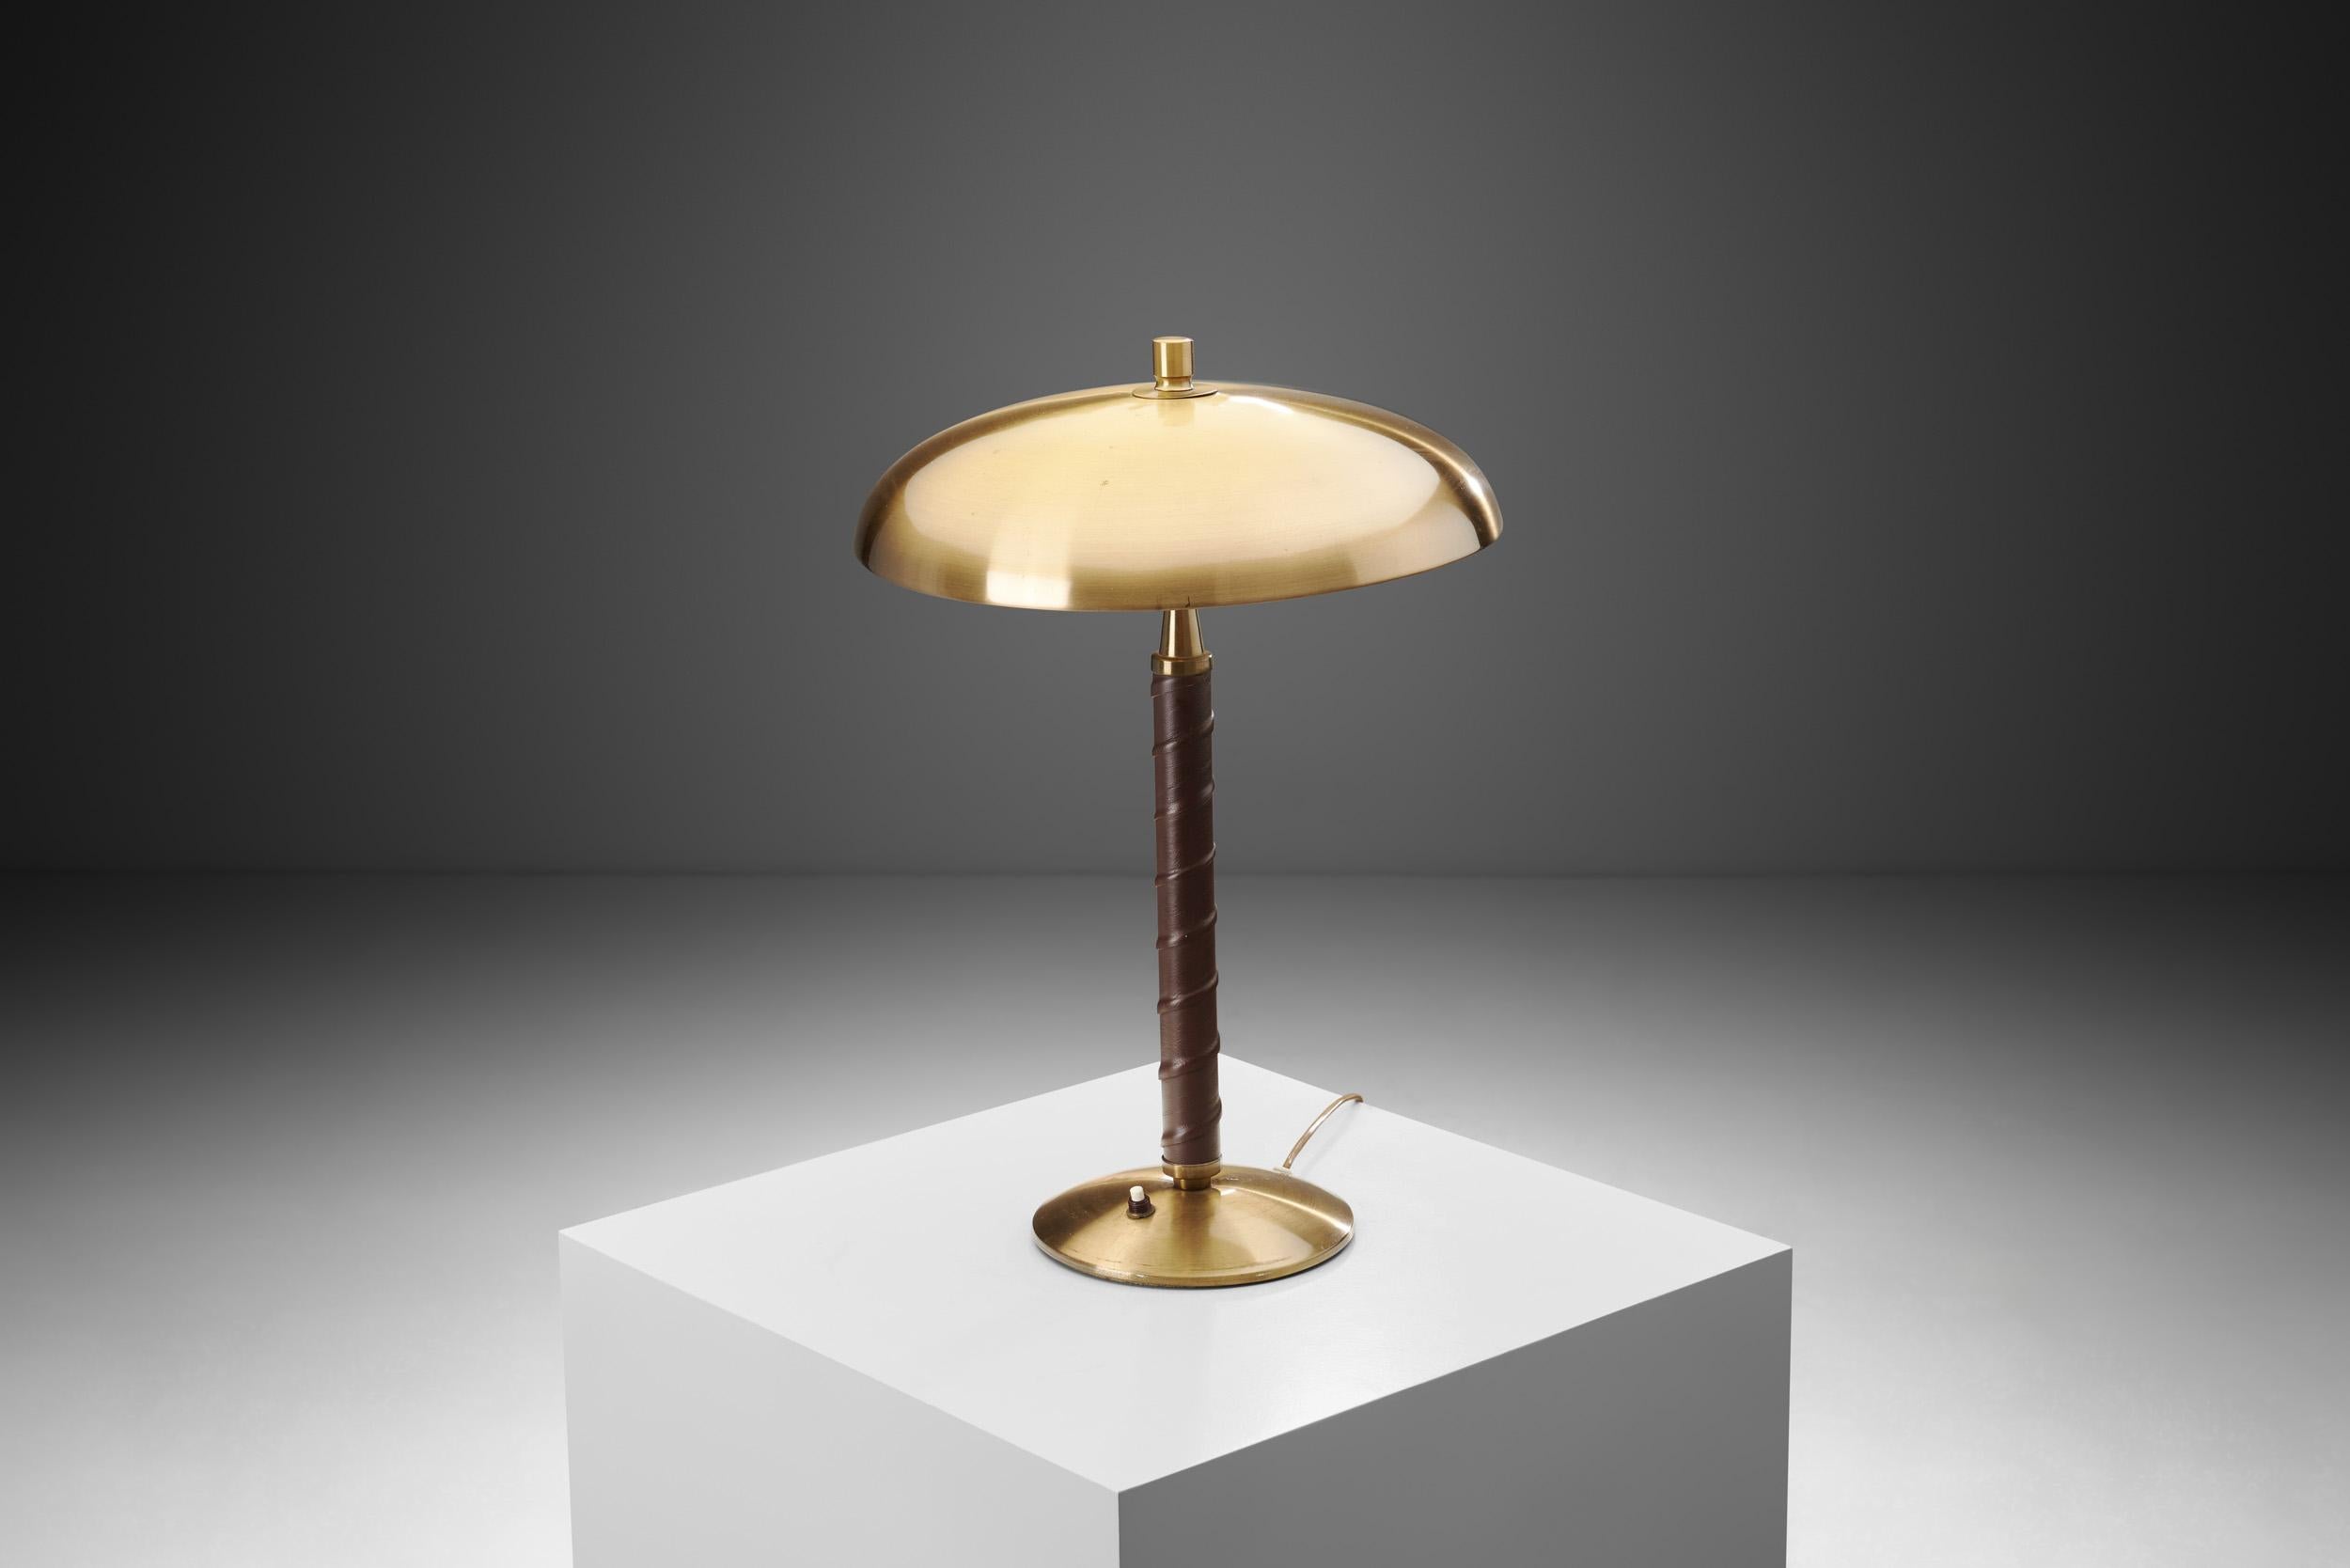 Cette lampe de table élégante est un modèle délicieusement distinctif, avec des détails immédiatement reconnaissables. Selon le musée de Malmö, Einar Bäckström a fondé son atelier en 1918 pour la fabrication de luminaires et d'ornements, et comme le